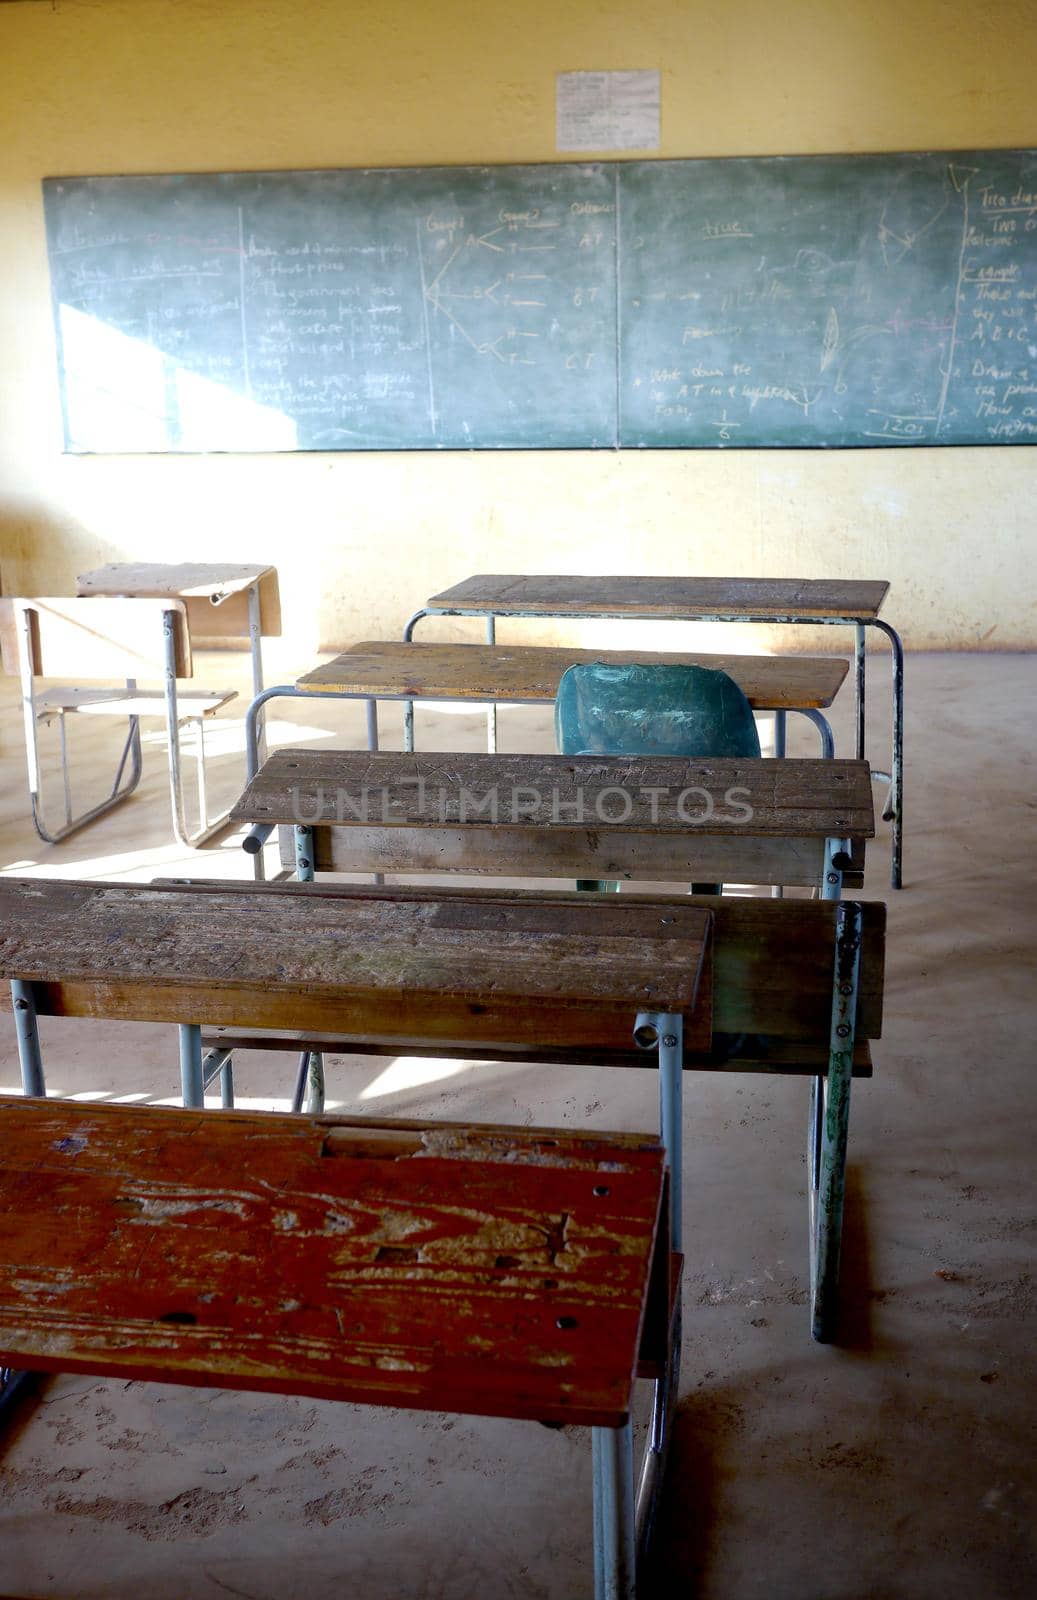 Poor classroom in African school by fivepointsix